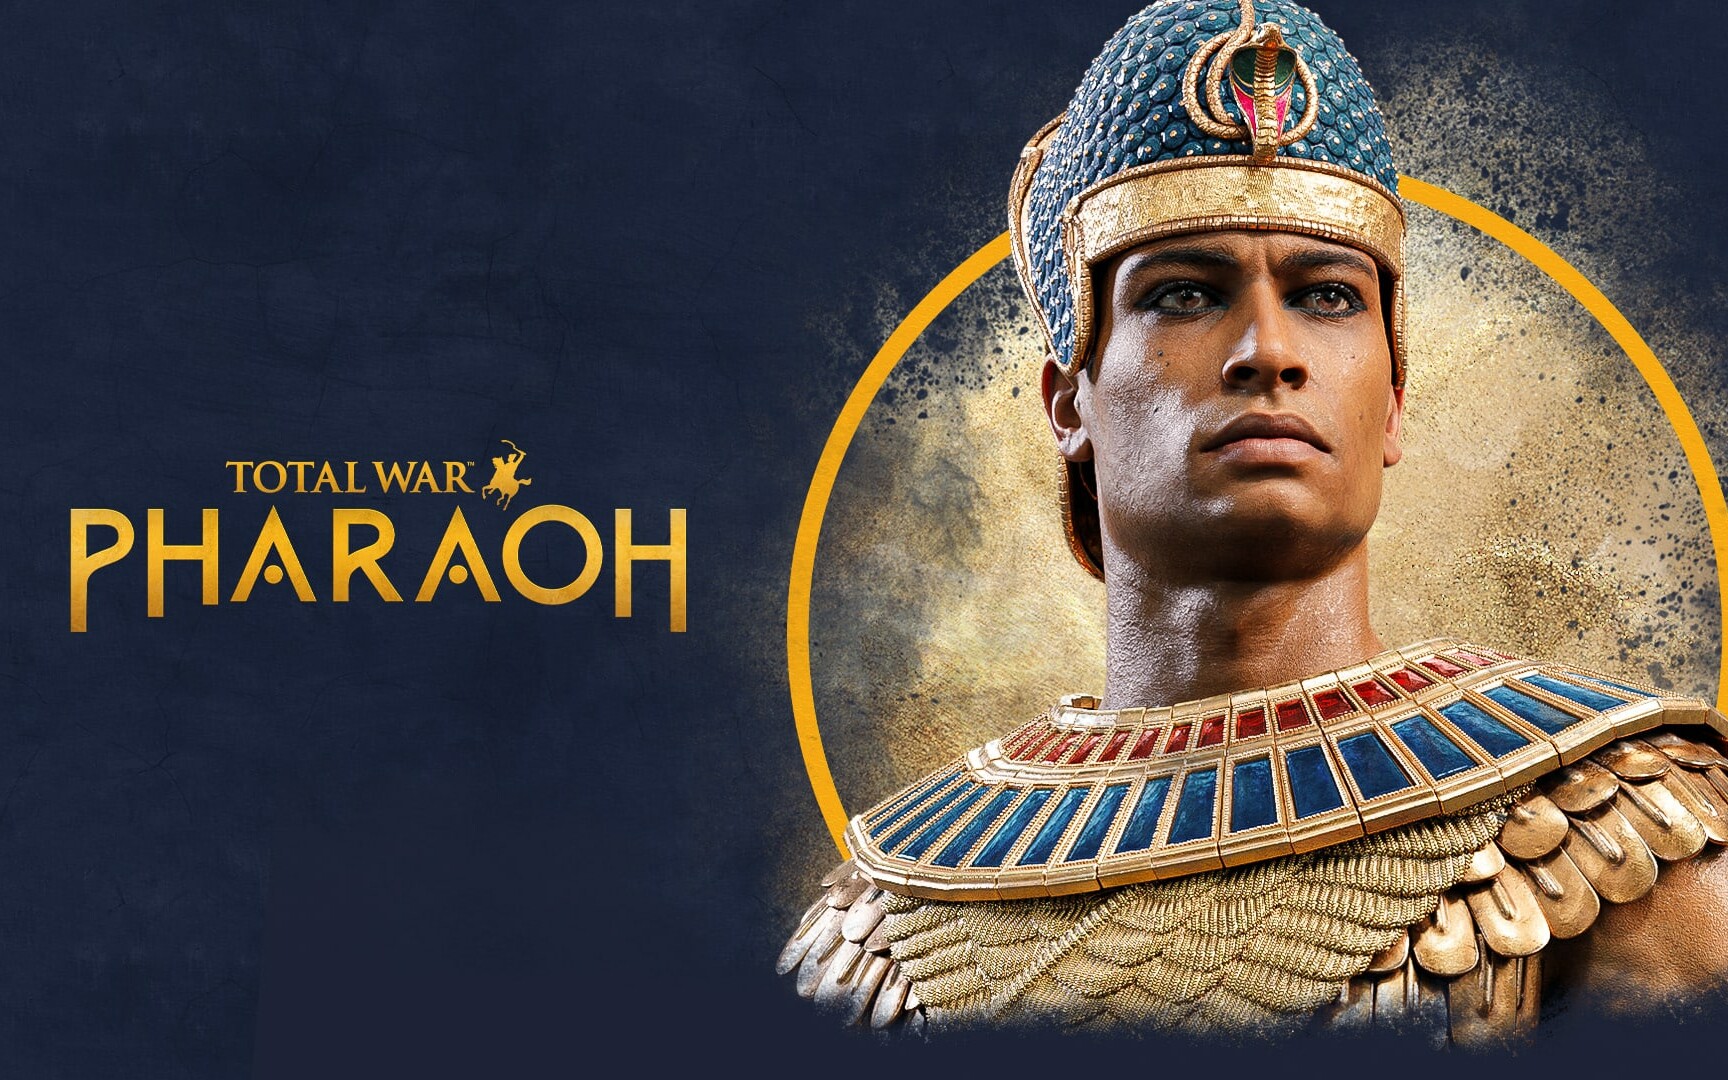 Total War Pharaoh Key Art